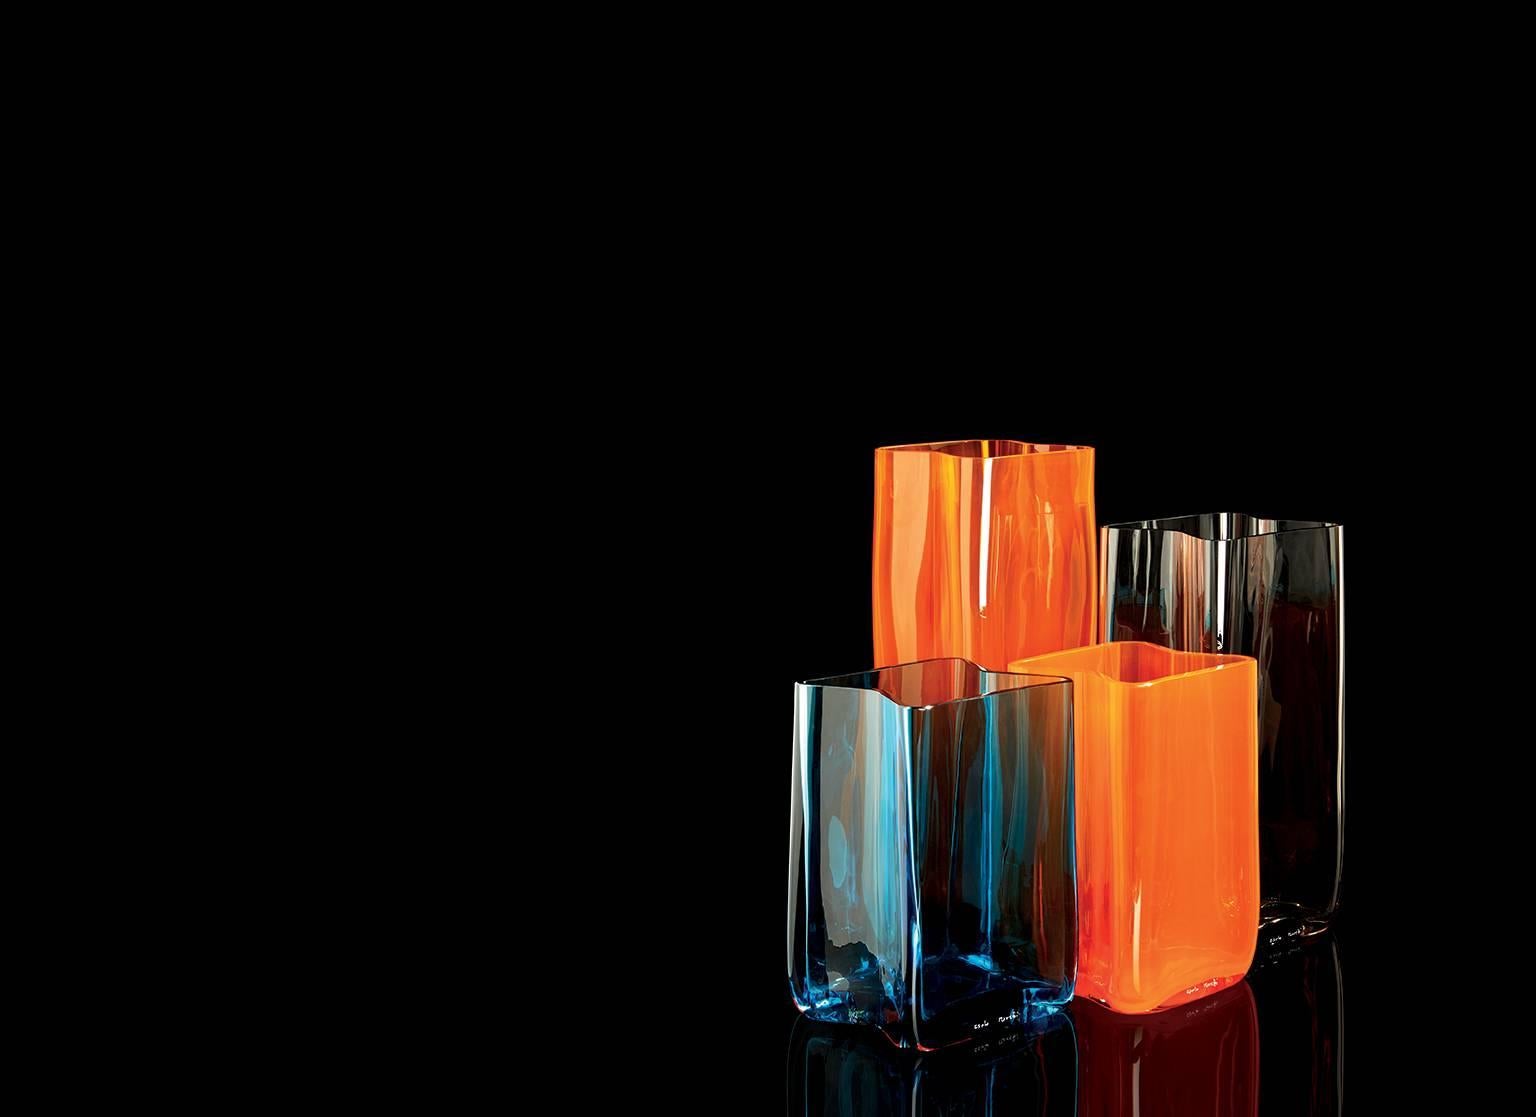 Zeitgenössische Vase aus mundgeblasenem Muranoglas von Carlo Moretti Bosco in klarem Lila.

Bosco kann mit anderen Bosco-Vasen in verschiedenen Farben und Größen harmonisch kombiniert